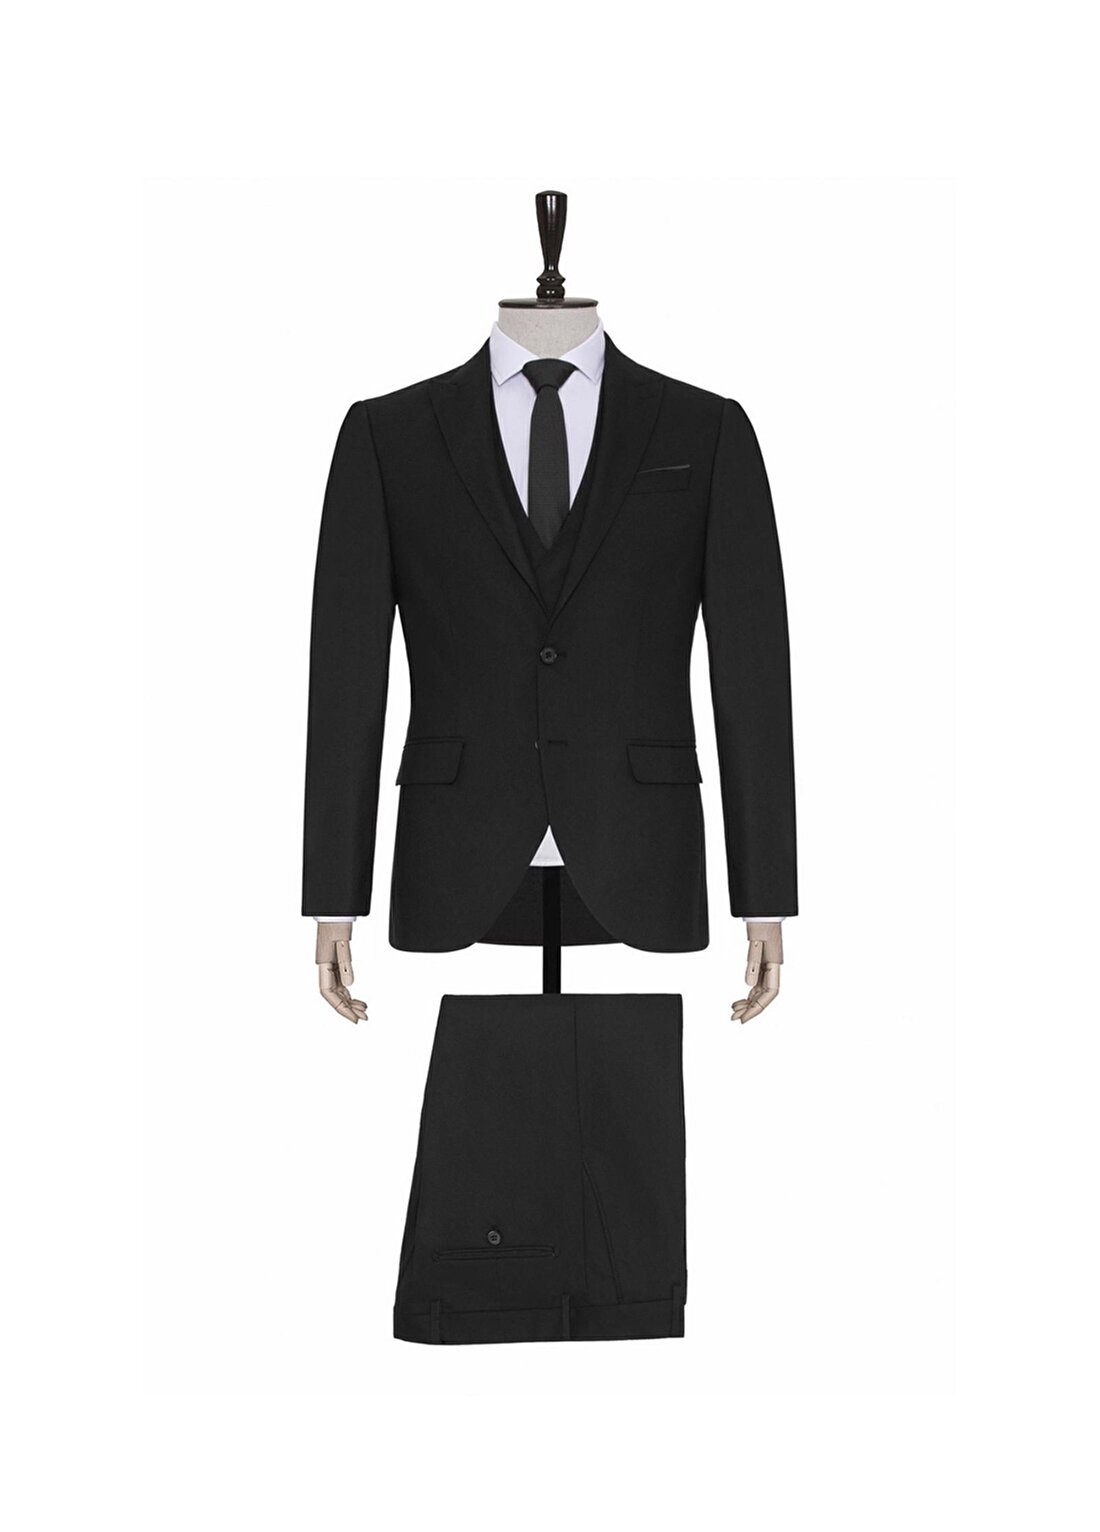 Süvari Normal Bel Slim Fit Siyah Erkek Takım Elbise TK1001100128